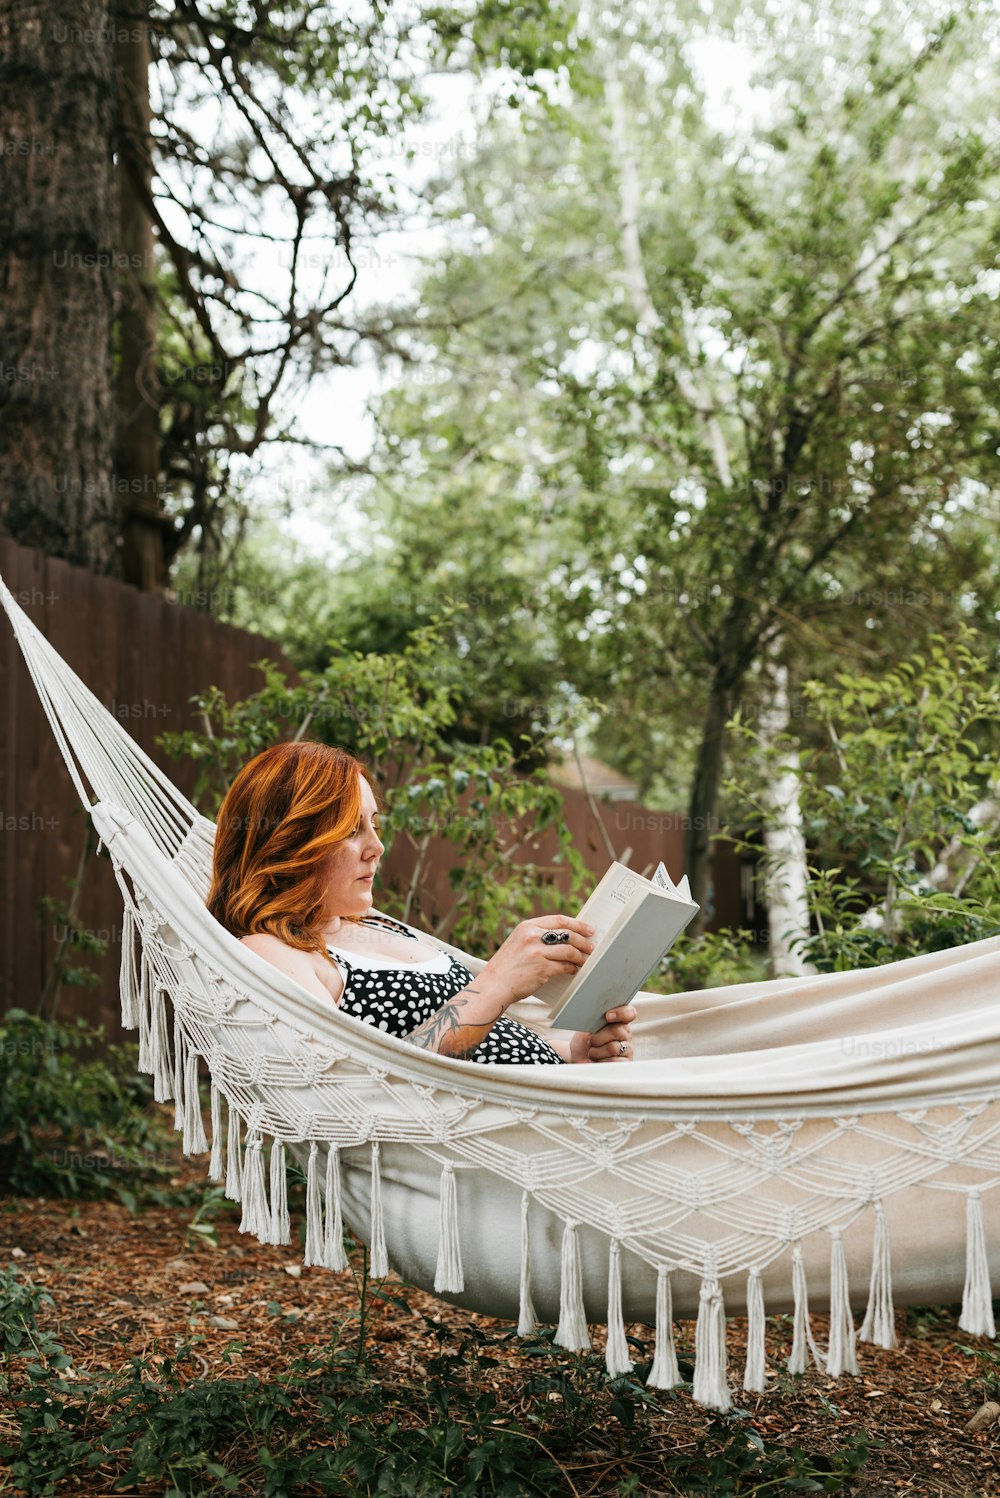 Una donna seduta su un'amaca che legge un libro